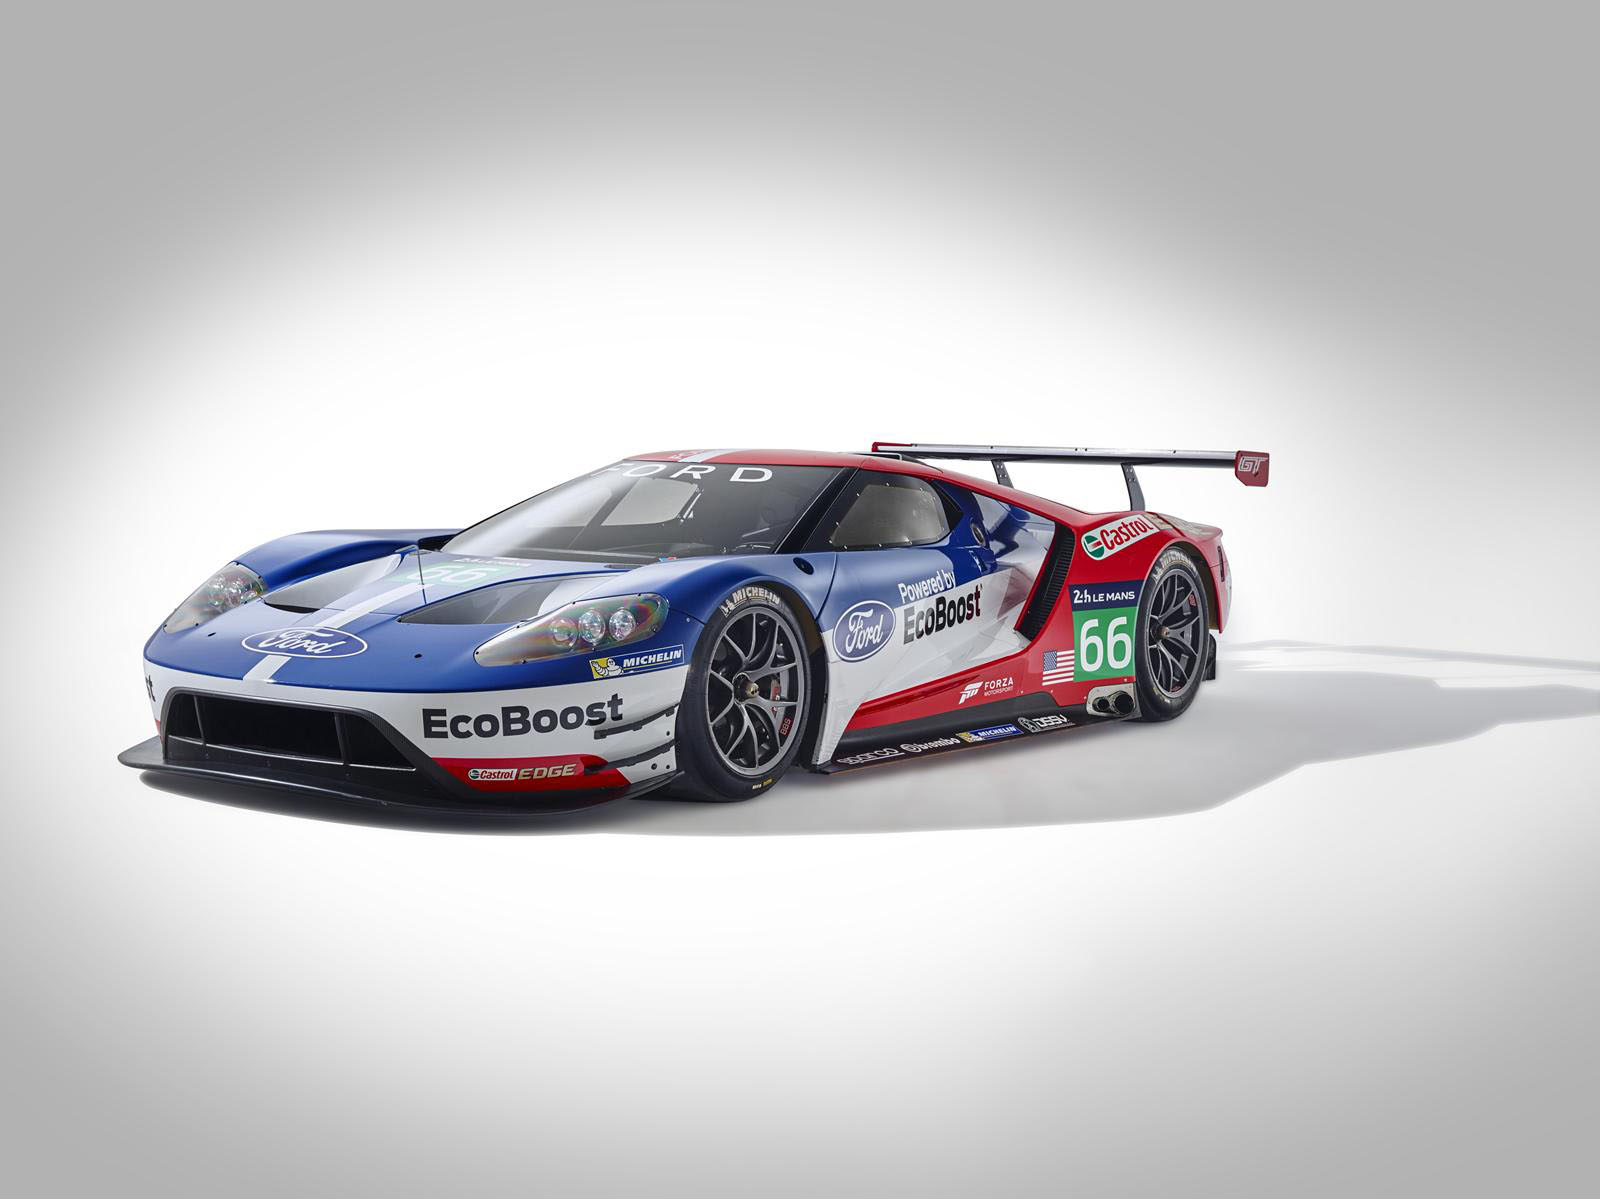 Schema racevariant Ford GT onthuld, dit zijn je kansen om hem te zien